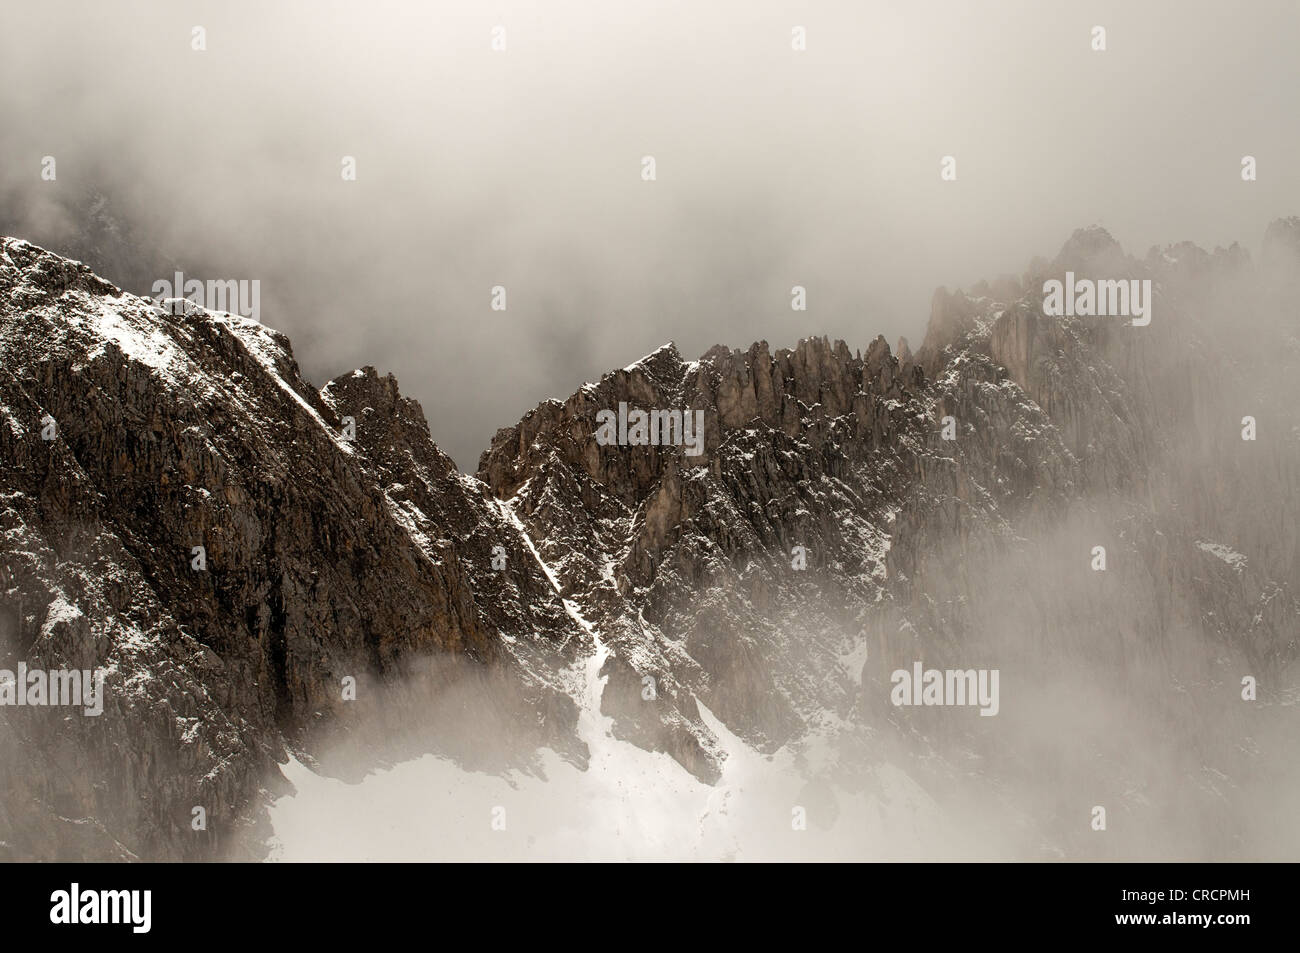 Misty mountain landscape, Nordkette, Karwendel Mountains, Tyrol, Austria, Europe Stock Photo